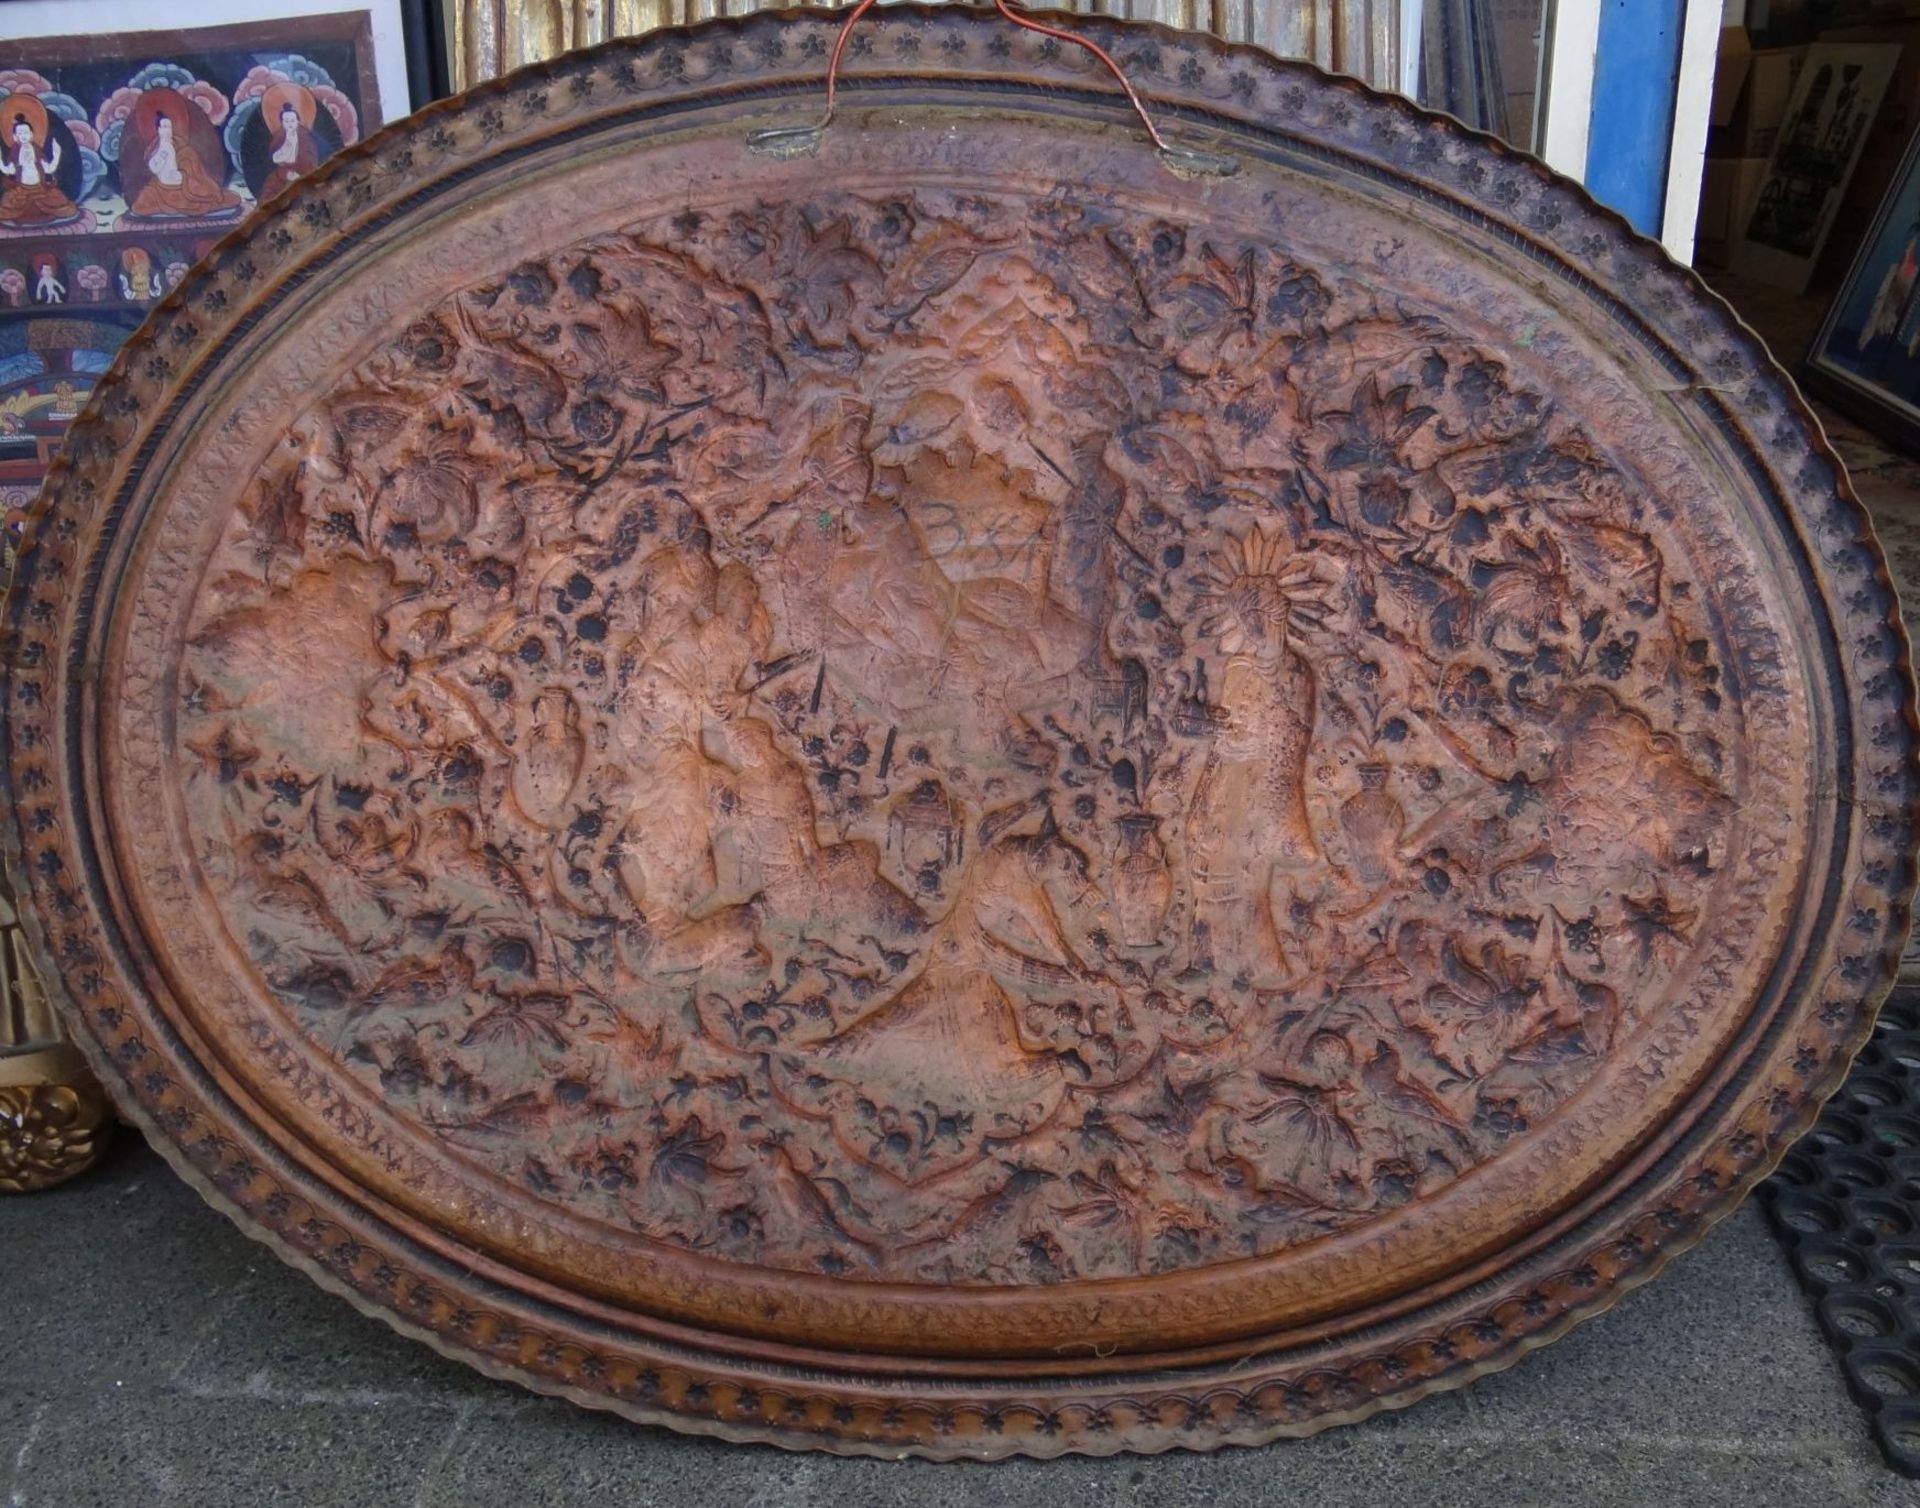 grosse ovale Kupferplatte, handgetriebene Haremszene, Alters-u. Gebrauchsspuren, 75x95 cm, wohl - Bild 3 aus 3